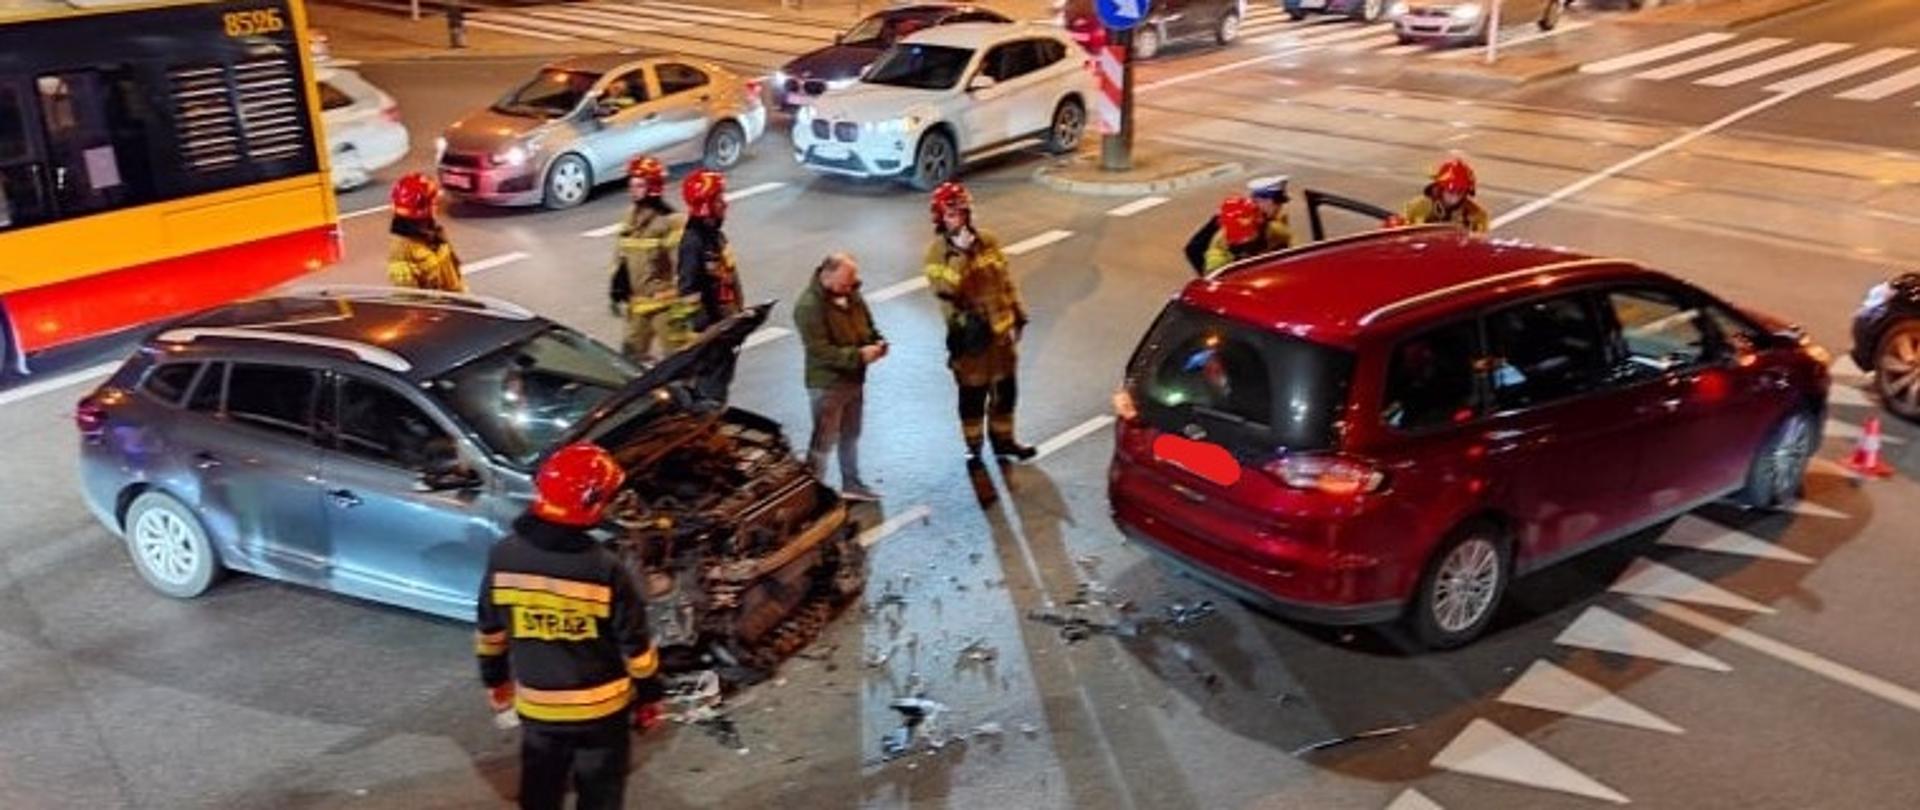 Na zdjęciu widoczne są dwa pojazdy które brały udział w wypadku, oraz pracujący strażacy